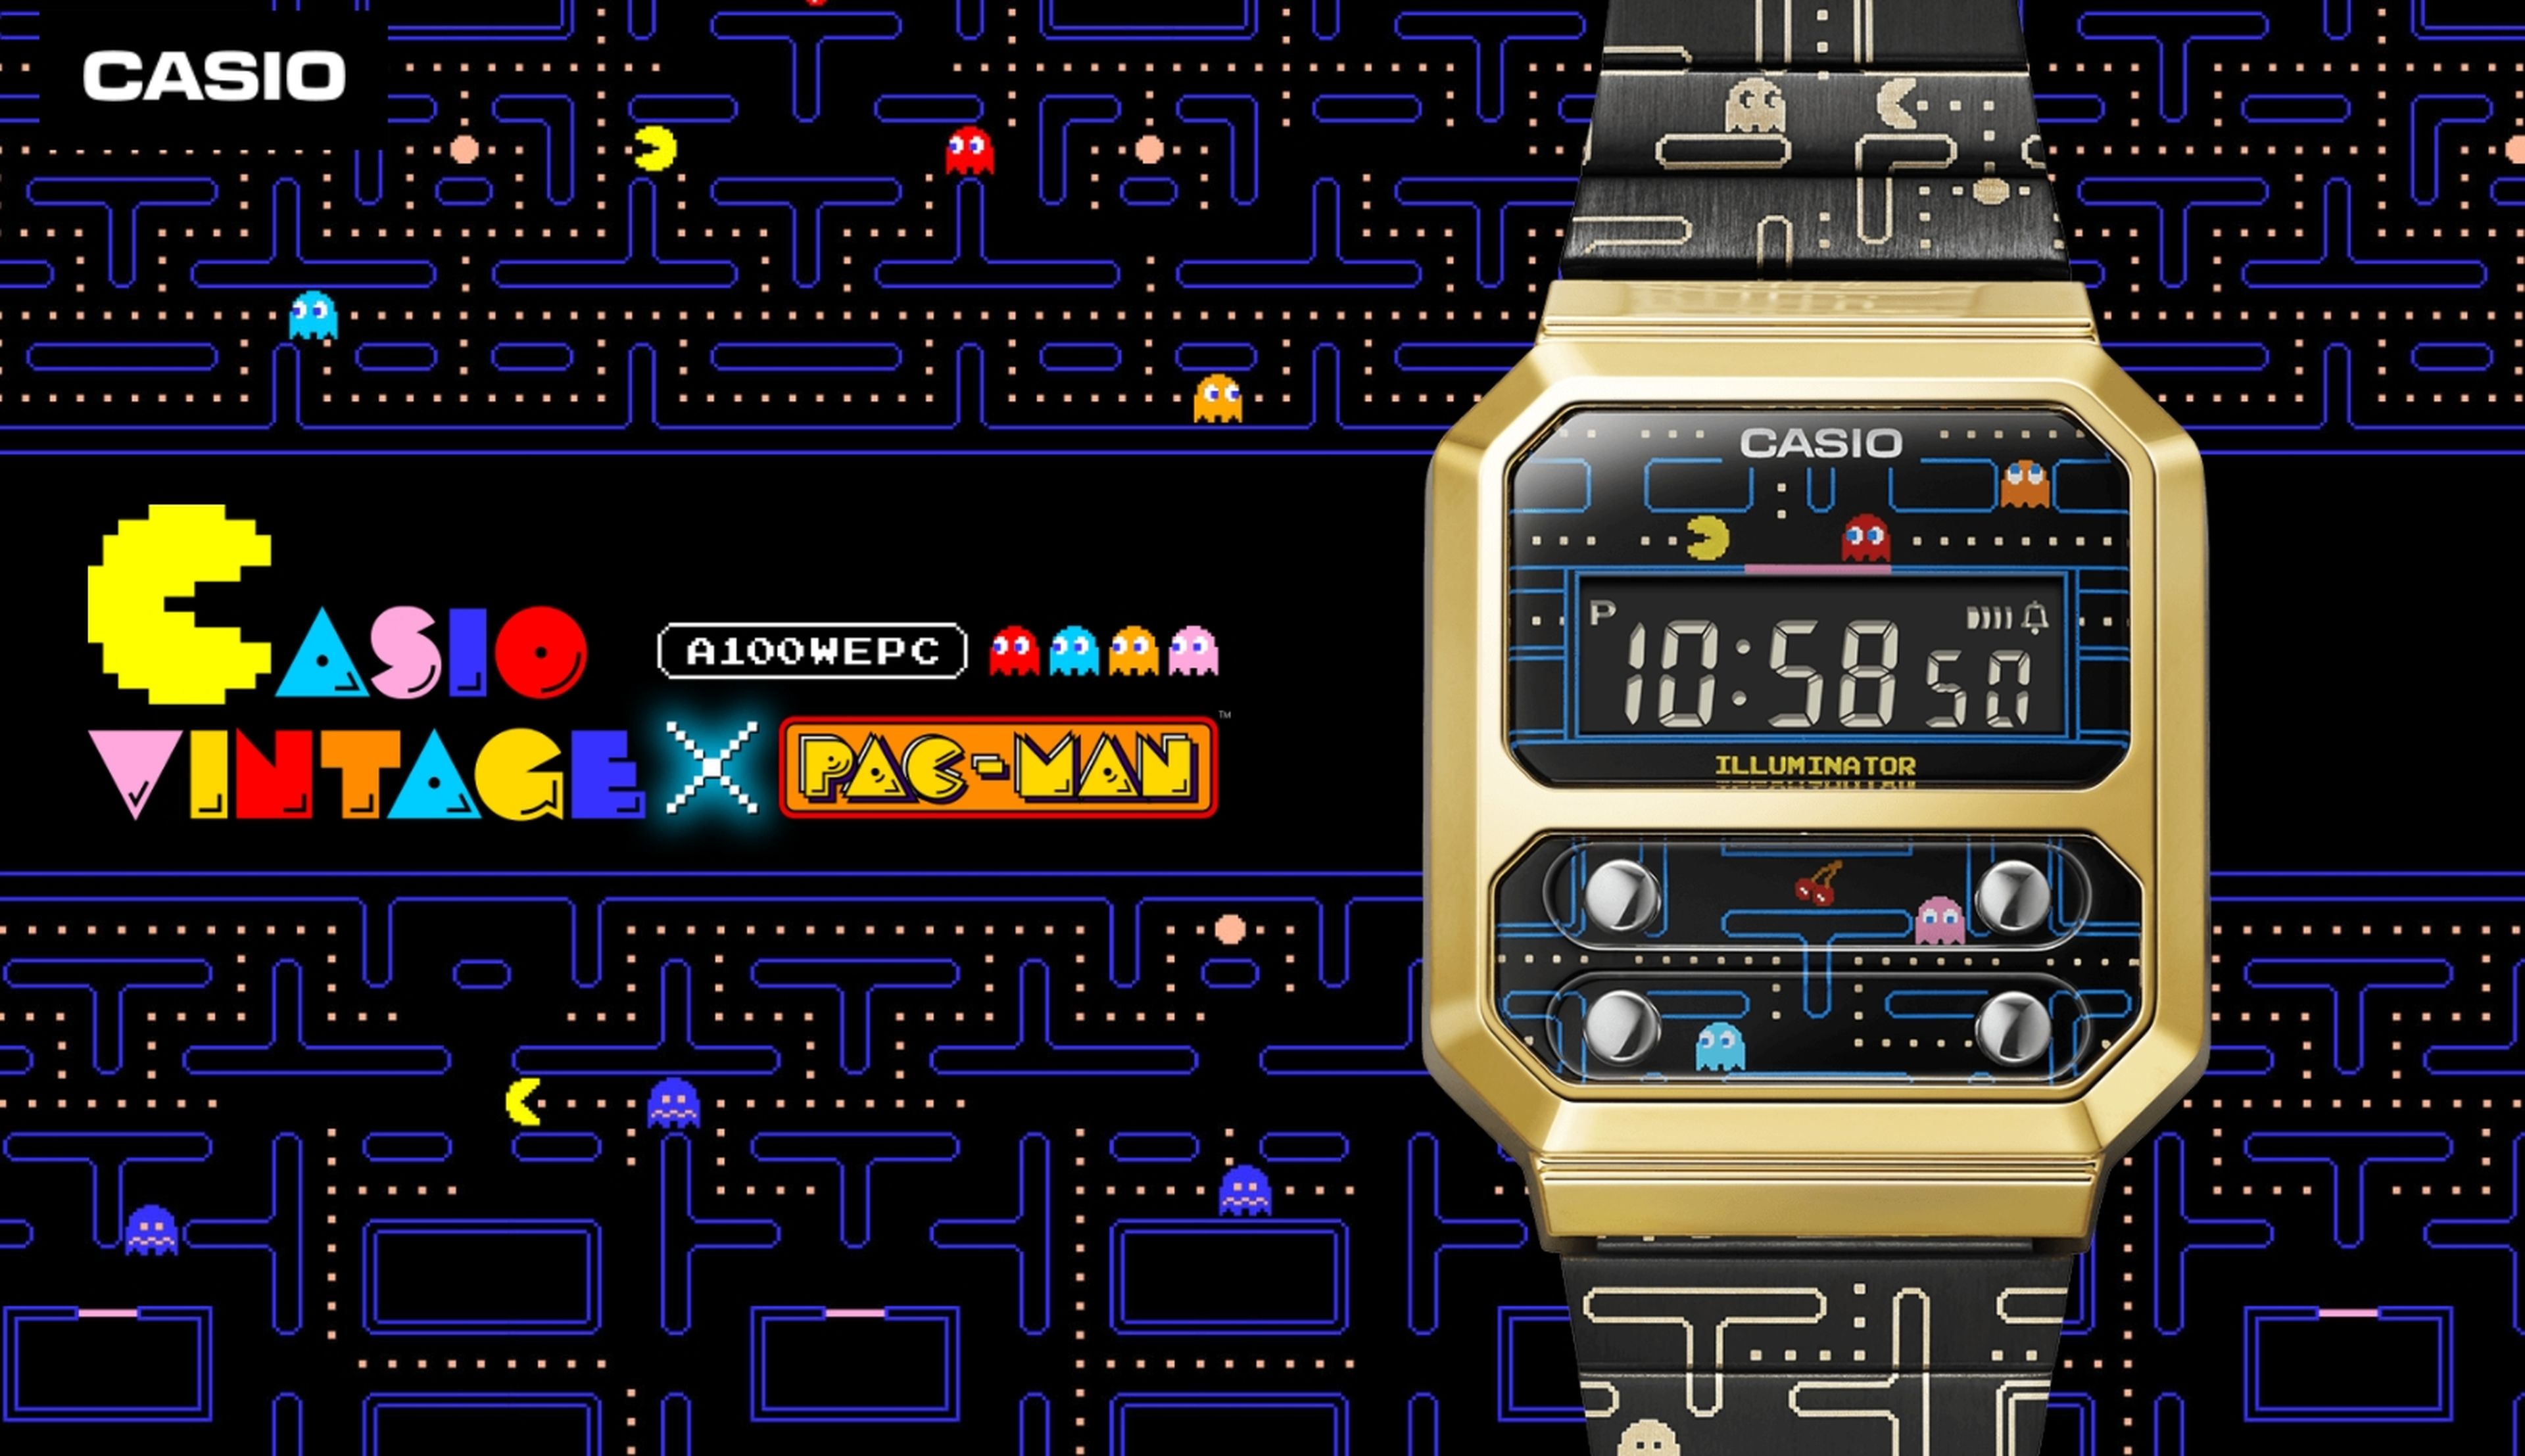 Pura nostalgia ochentera: Casio lanza el reloj de Pac-man, con un diseño de 1978